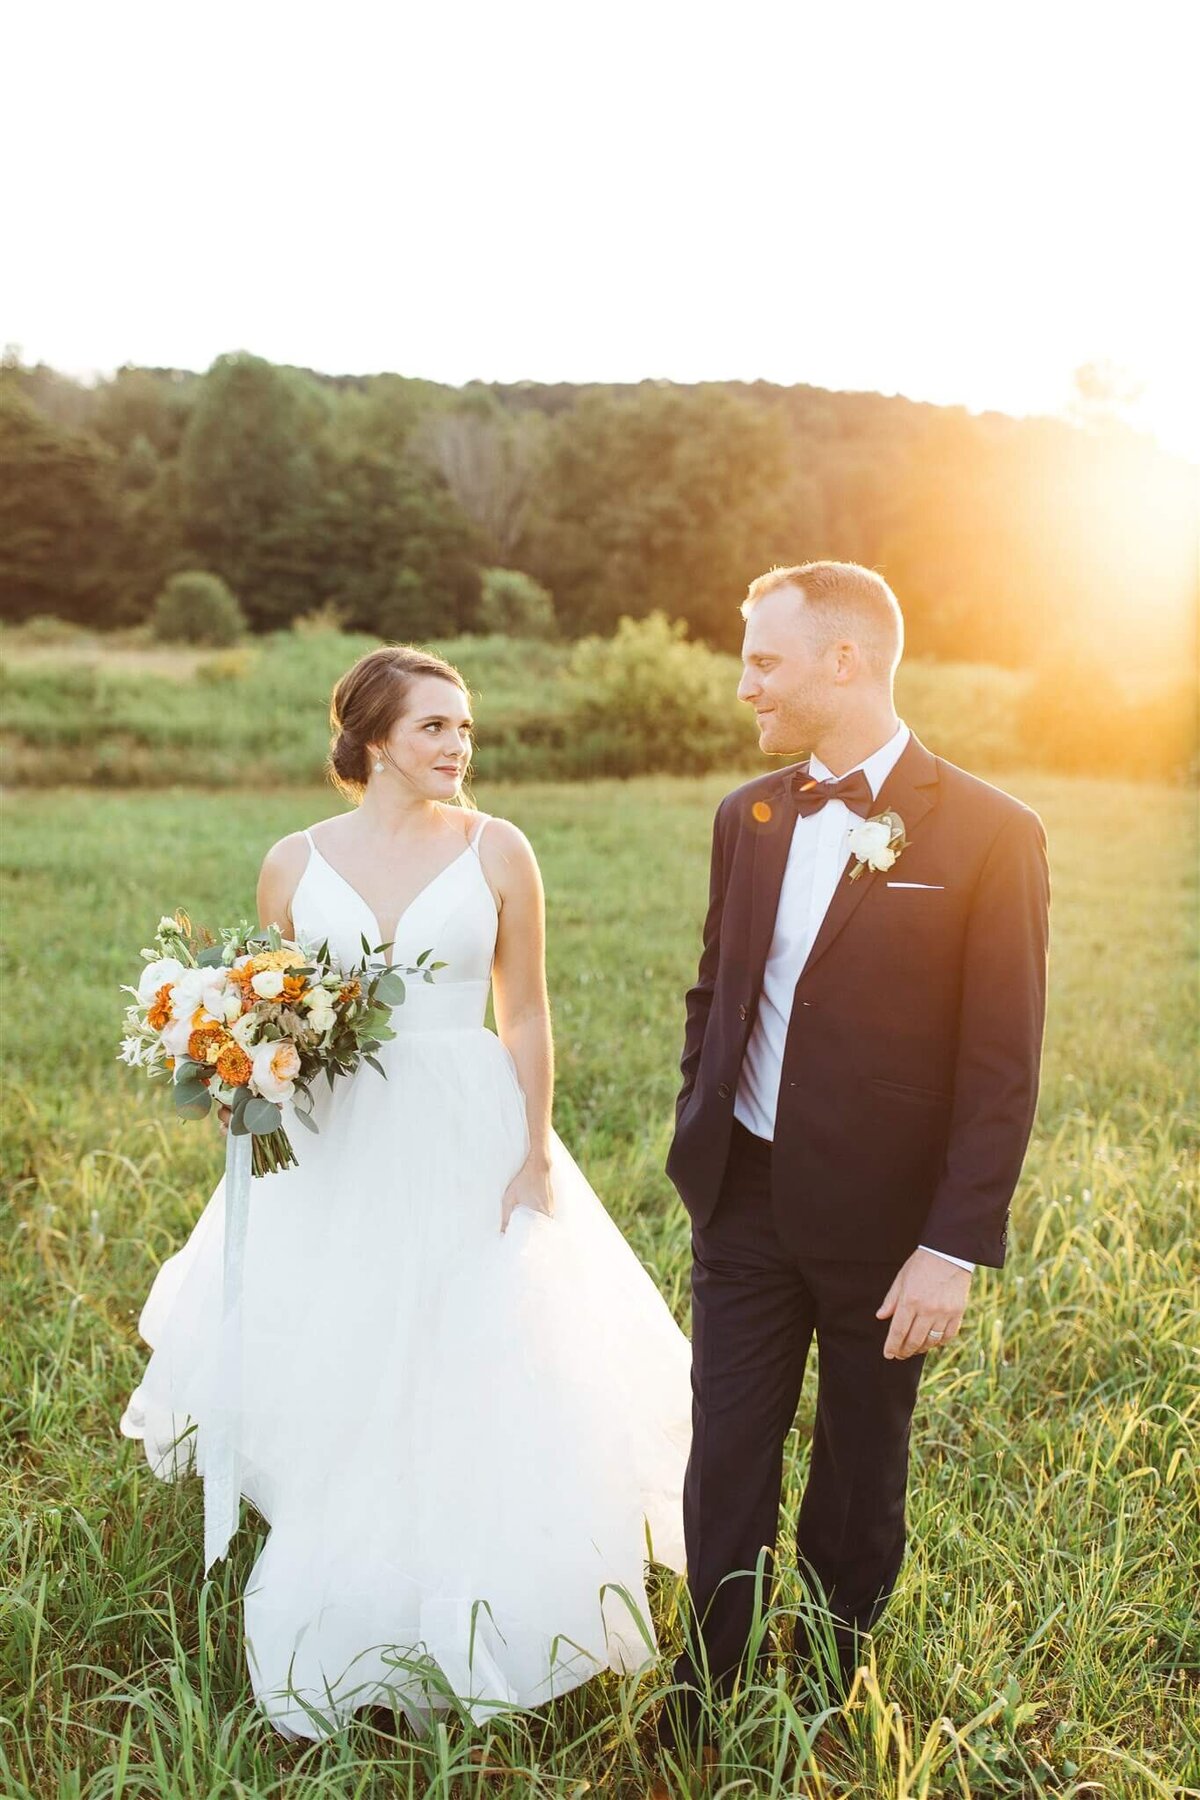 Kalynne Miller Wedding - bride and groom walking